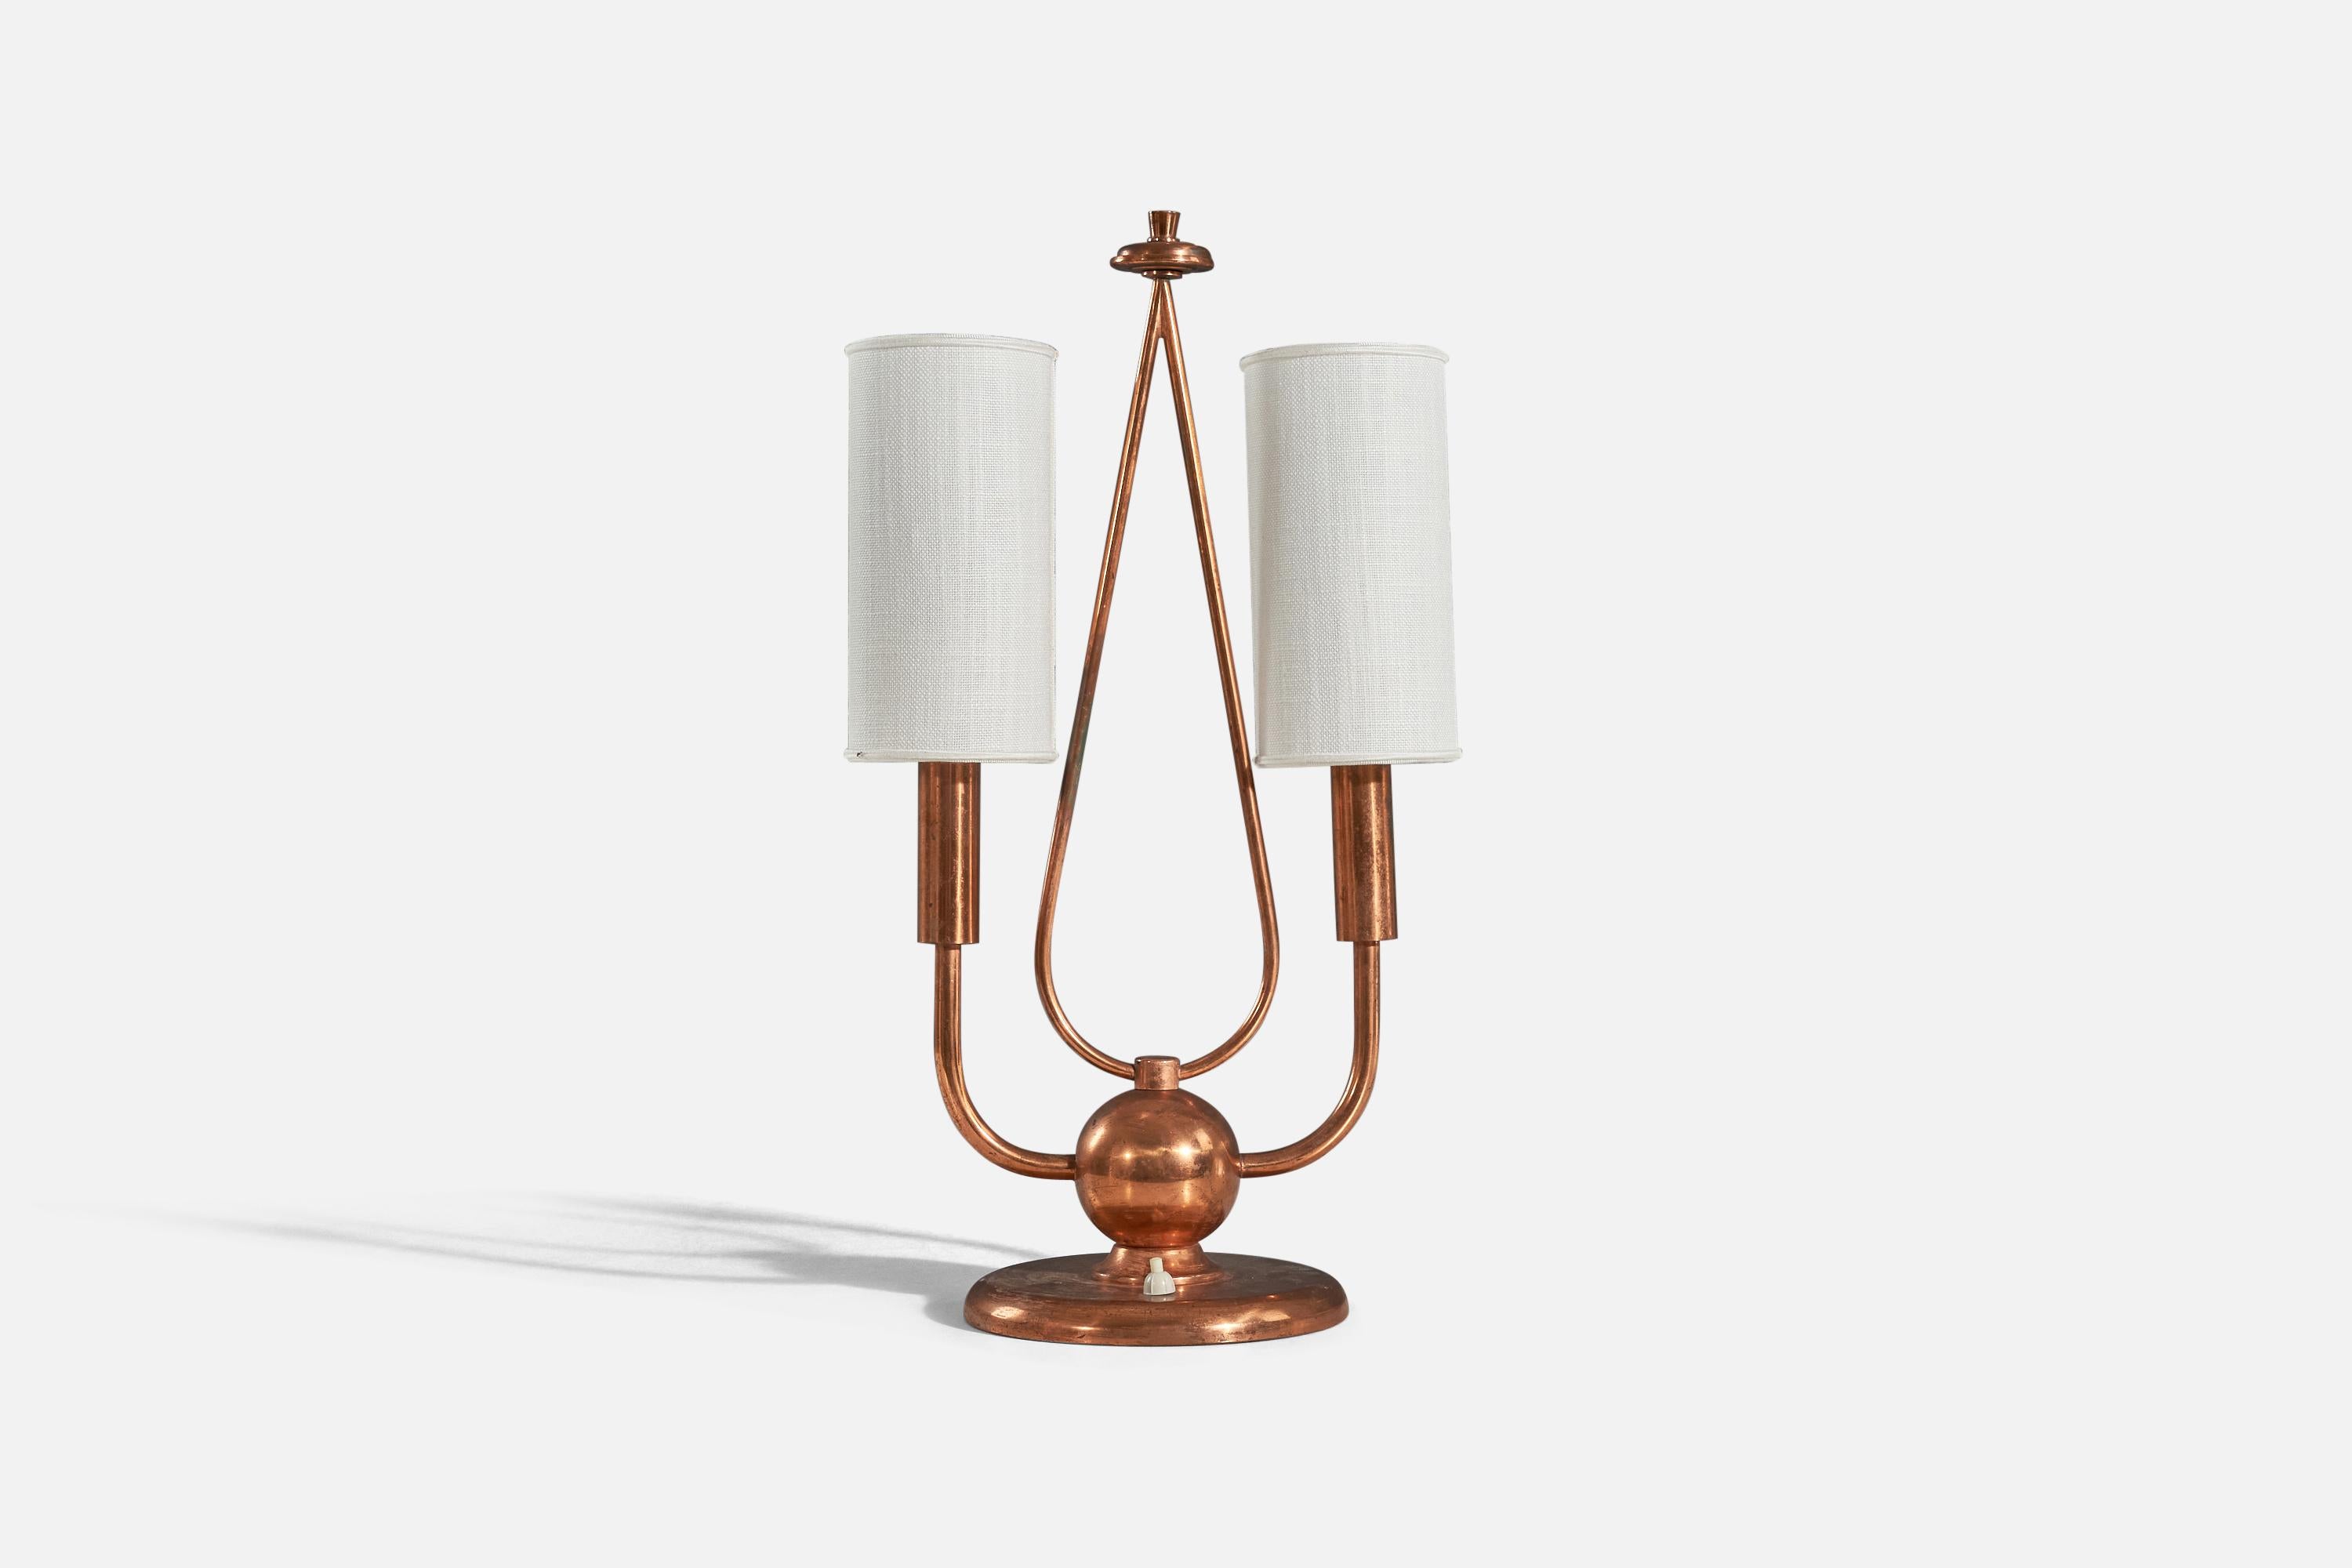 Lampe de table en cuivre et tissu conçue et produite en Italie, années 1940. 

Vendu avec des abat-jour.
Les dimensions indiquées se réfèrent à la lampe avec les abat-jour.